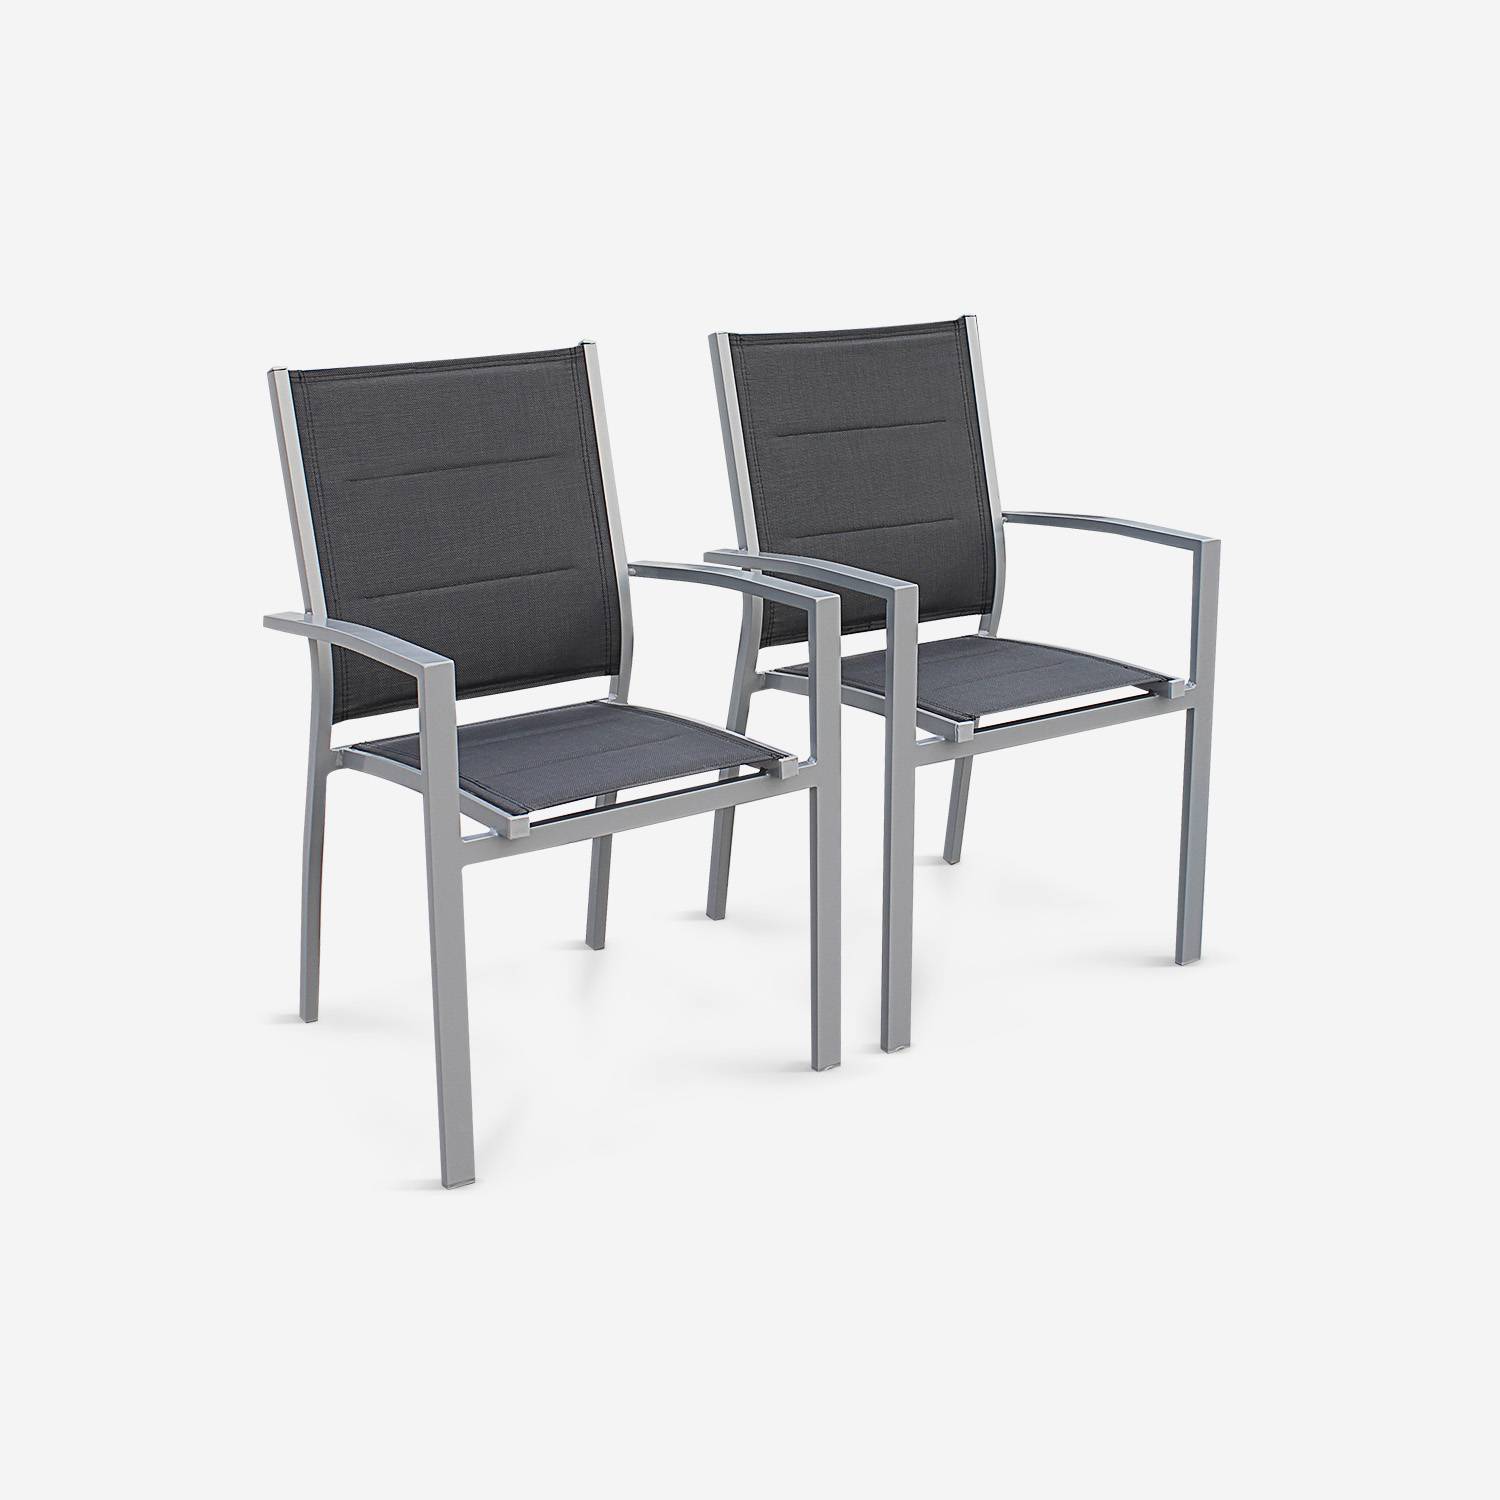 Lot de 2 fauteuils - Chicago / Odenton  - En aluminium gris et textilène gris foncé, empilables Photo3